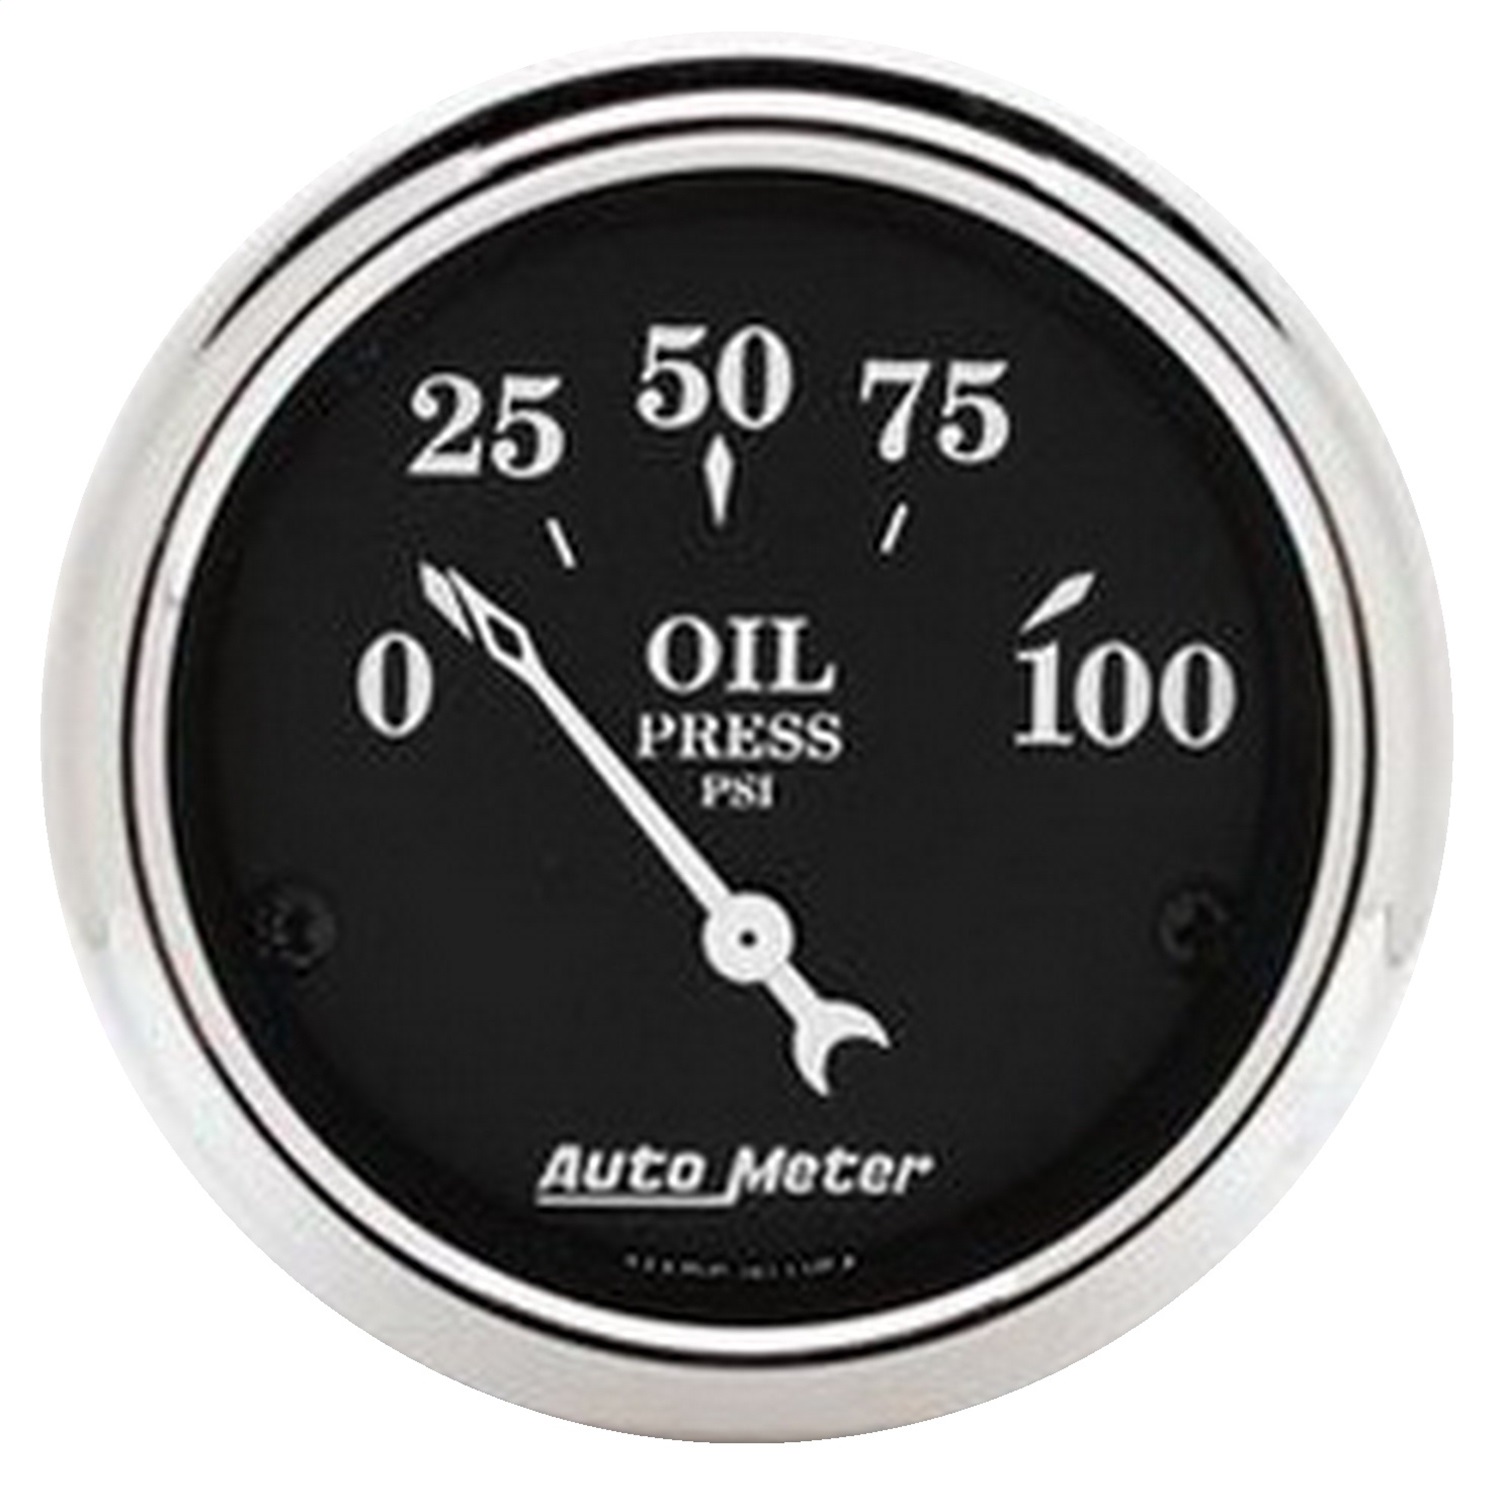 Auto Meter Auto Meter 1727 Old Tyme Black; Oil Pressure Gauge